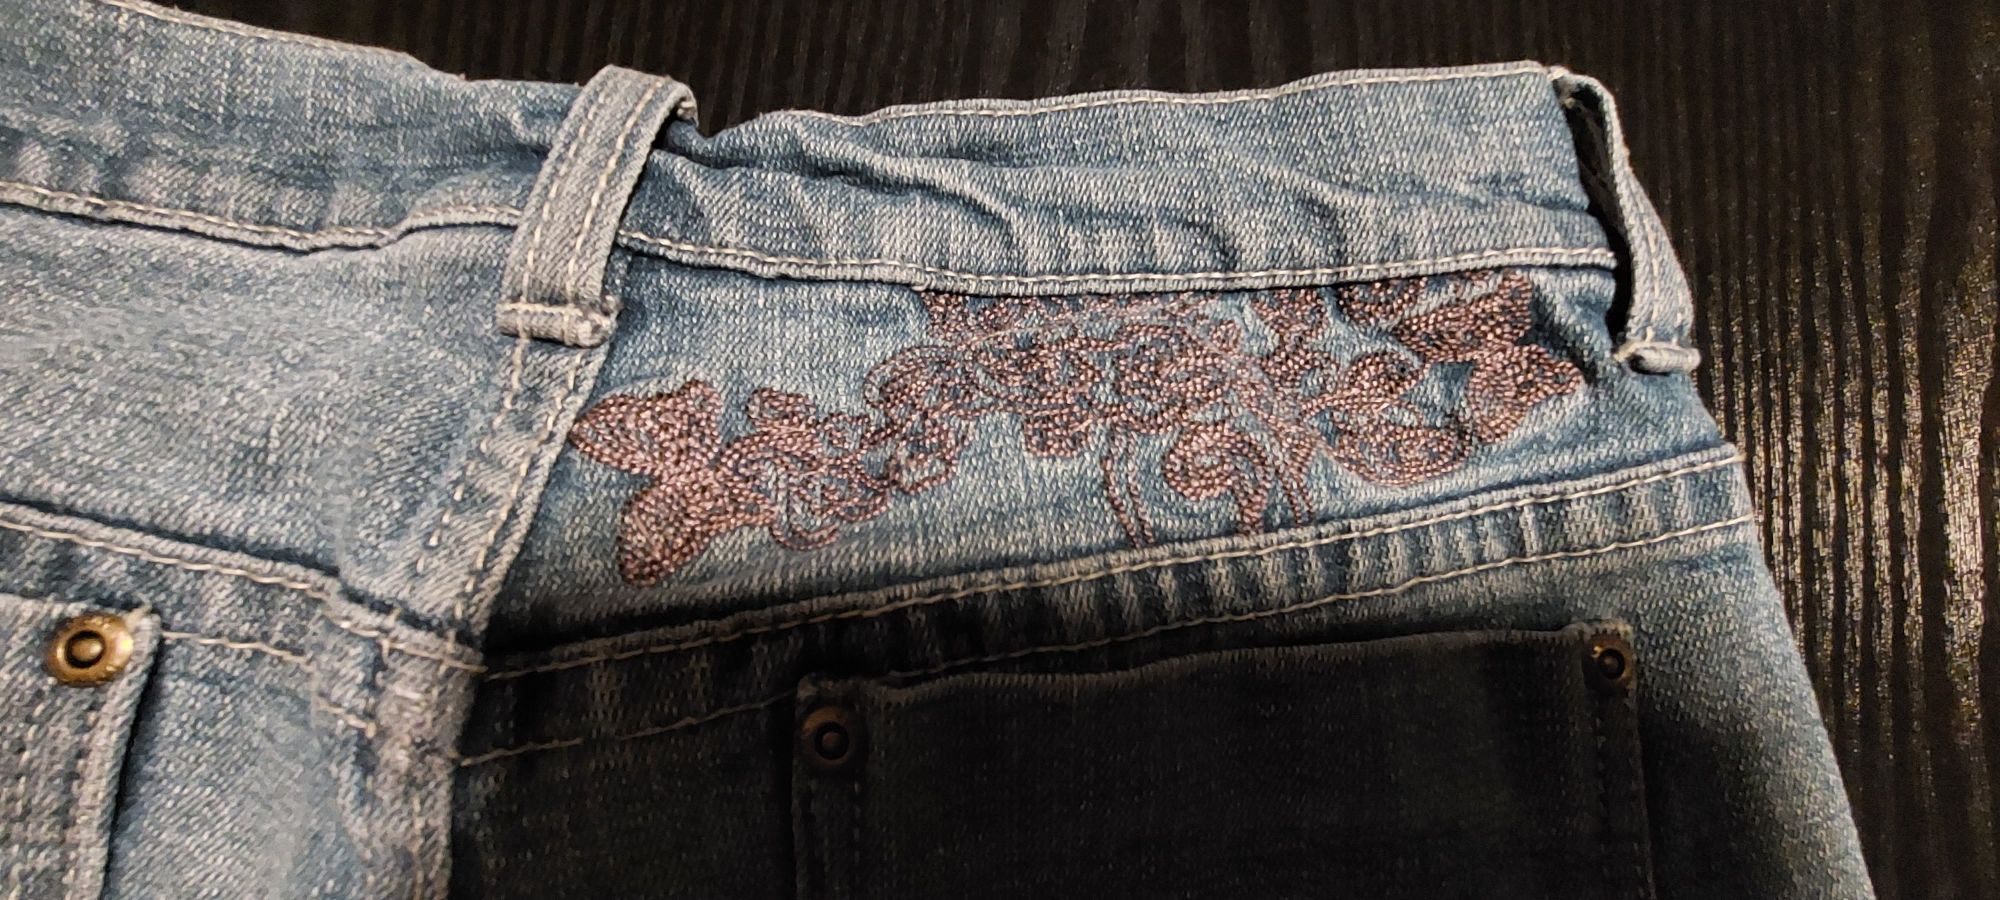 Spodenki bermudy Jeans roz 34  jak nowe